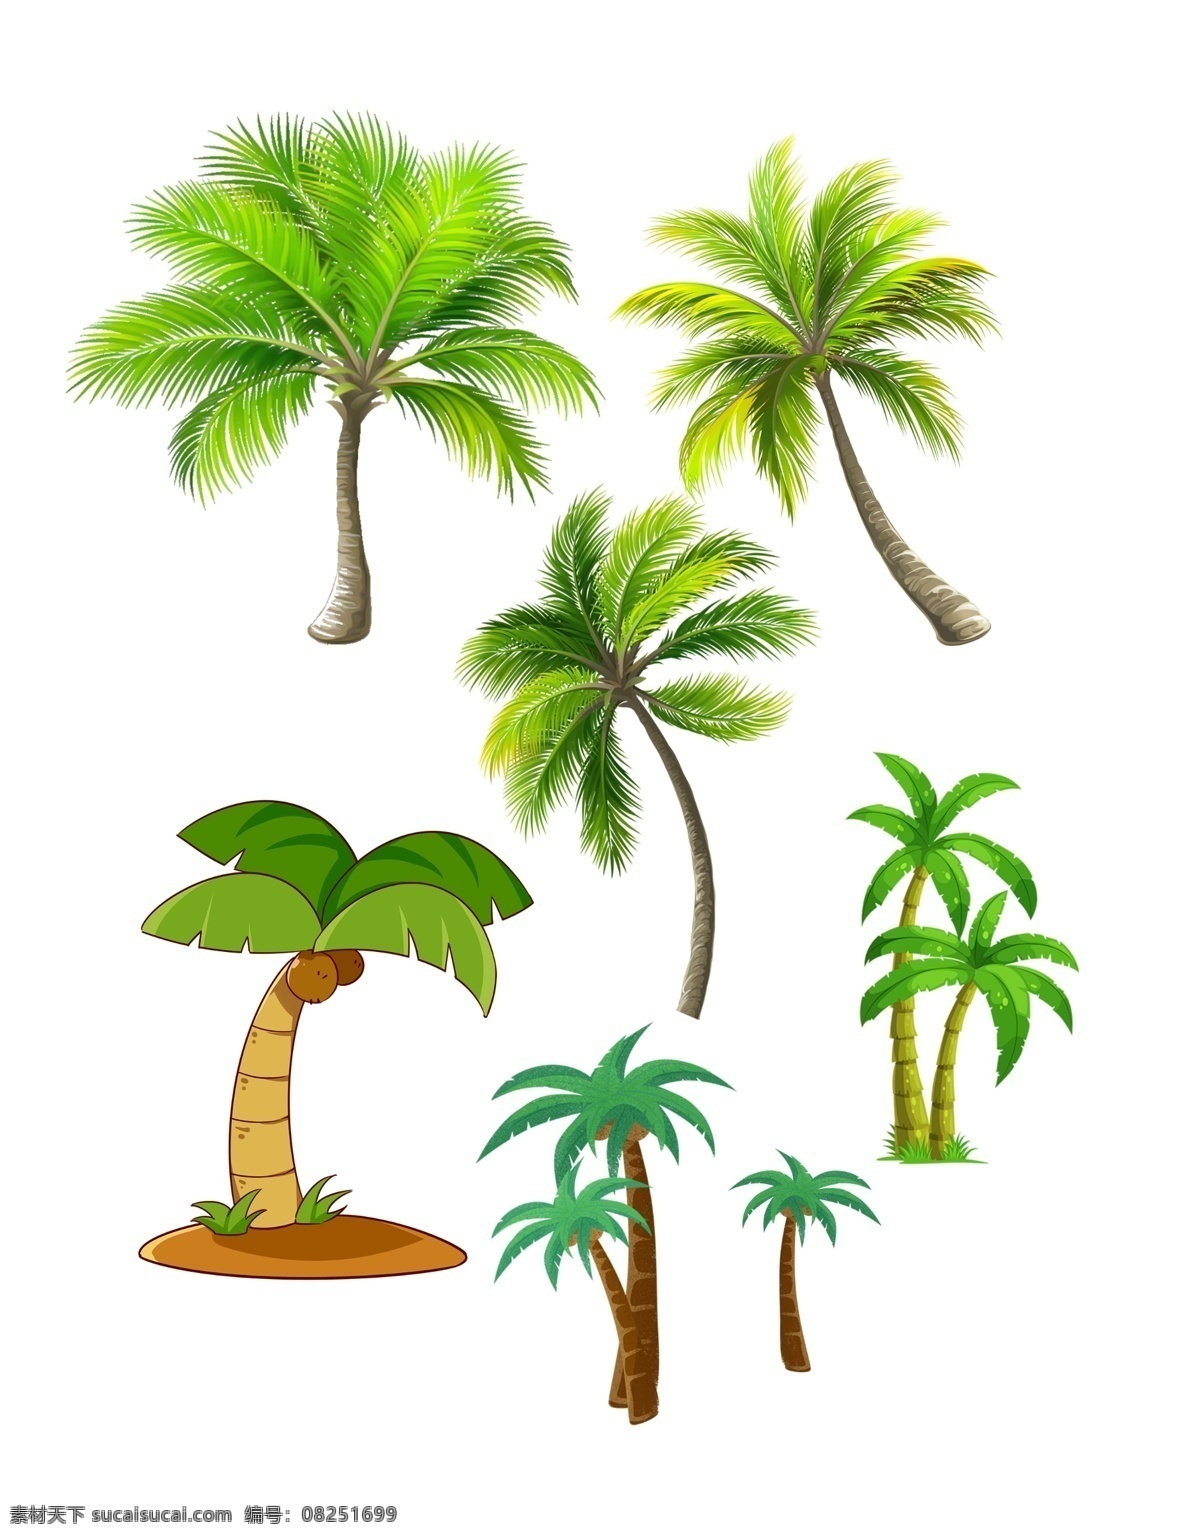 椰子树 高清椰子树 夏日椰子树 大图椰子树 椰子树背景 棕榈树 植物 树木 矢量棕榈树 矢量椰树 矢量树木 海南植物 矢量椰子树